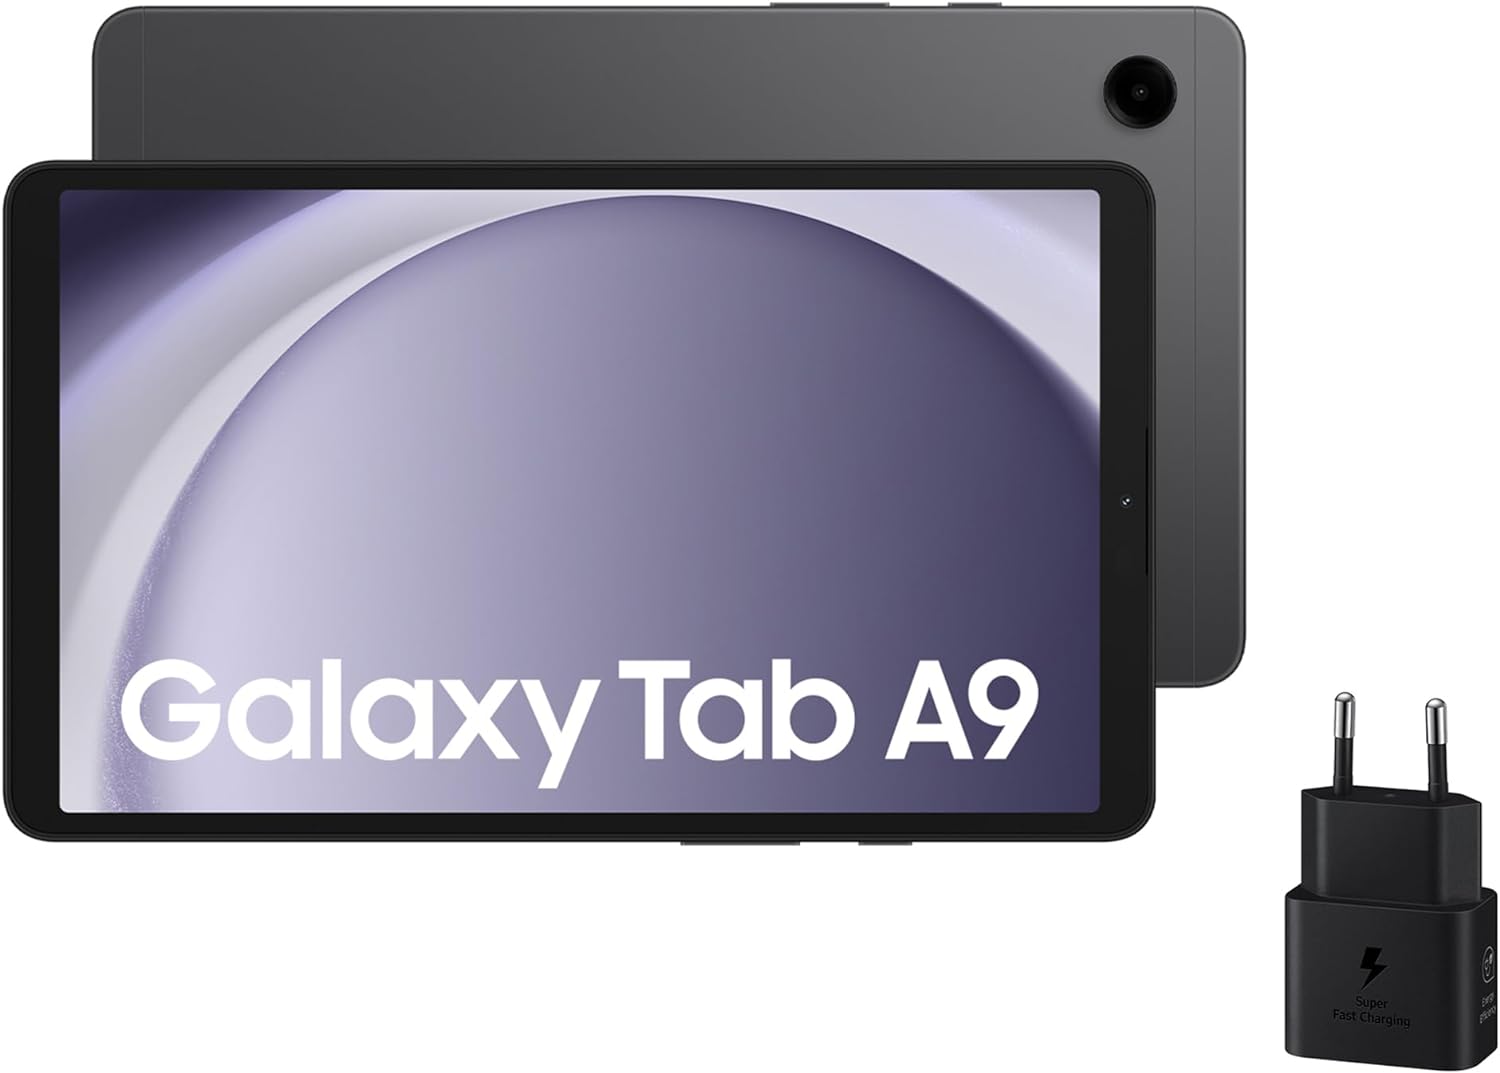 Samsung Galaxy Tab A9 vs Lenovo Tab M10 Plus